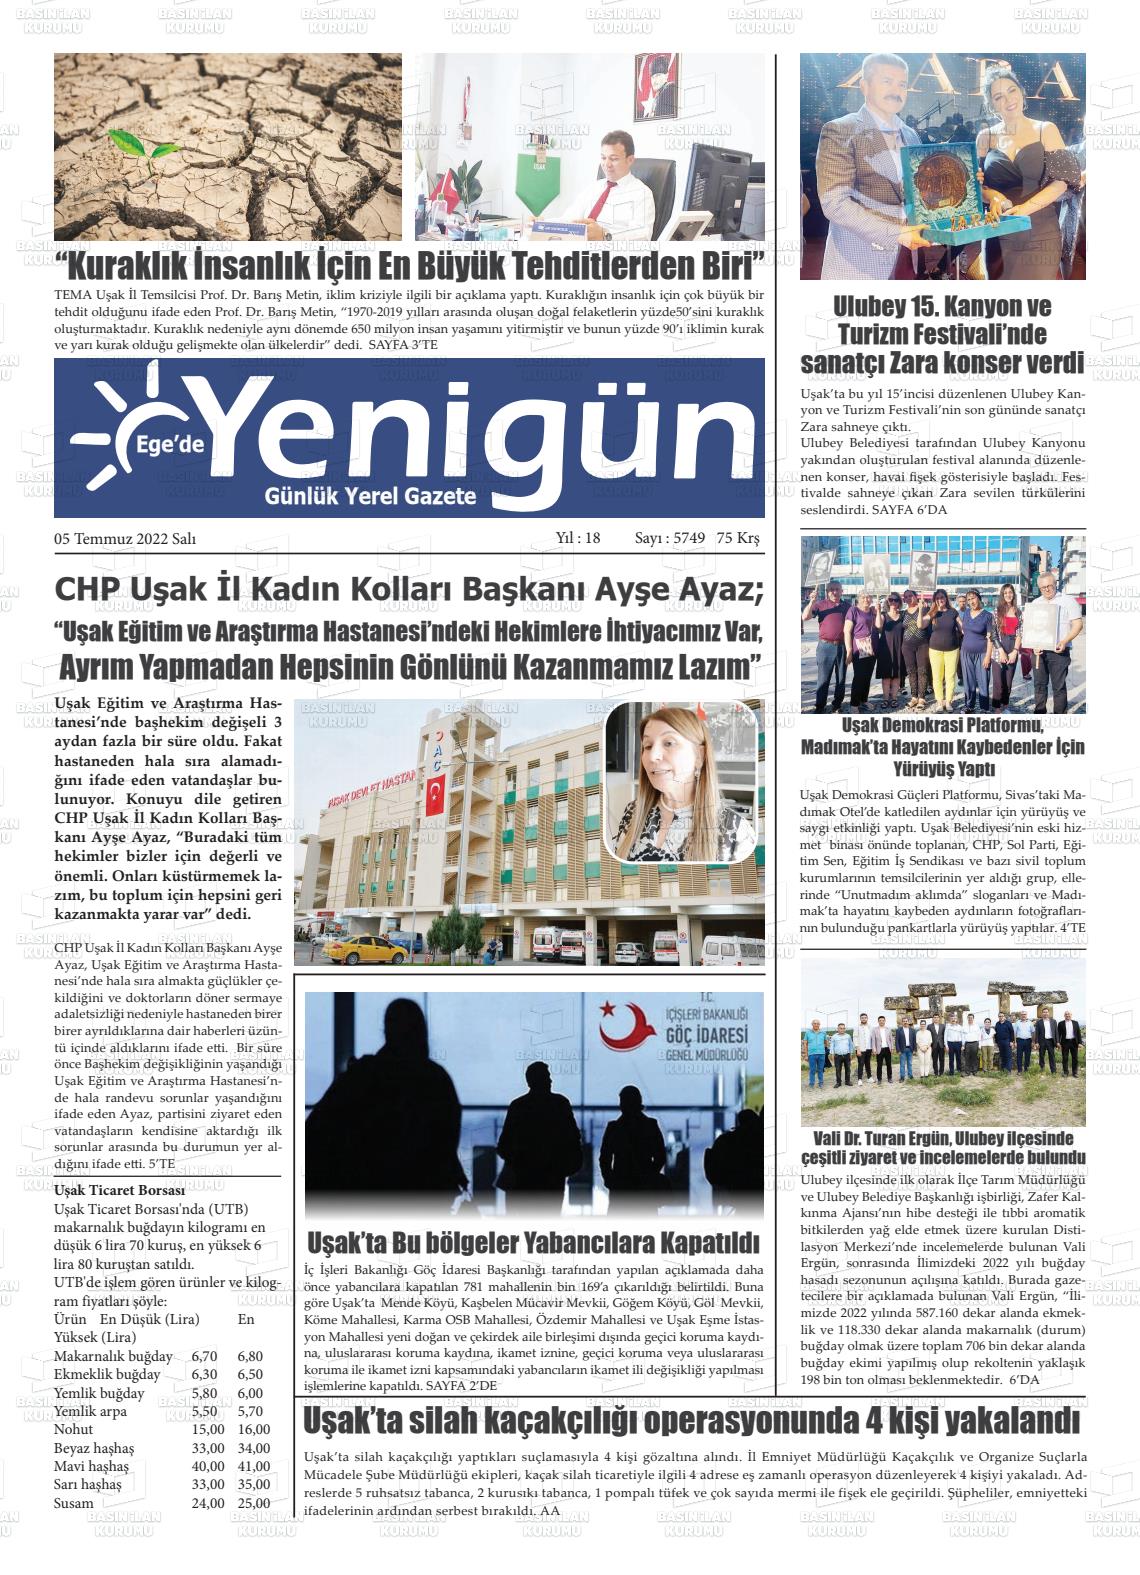 05 Temmuz 2022 EGE'DE YENİGÜN GAZETESİ Gazete Manşeti